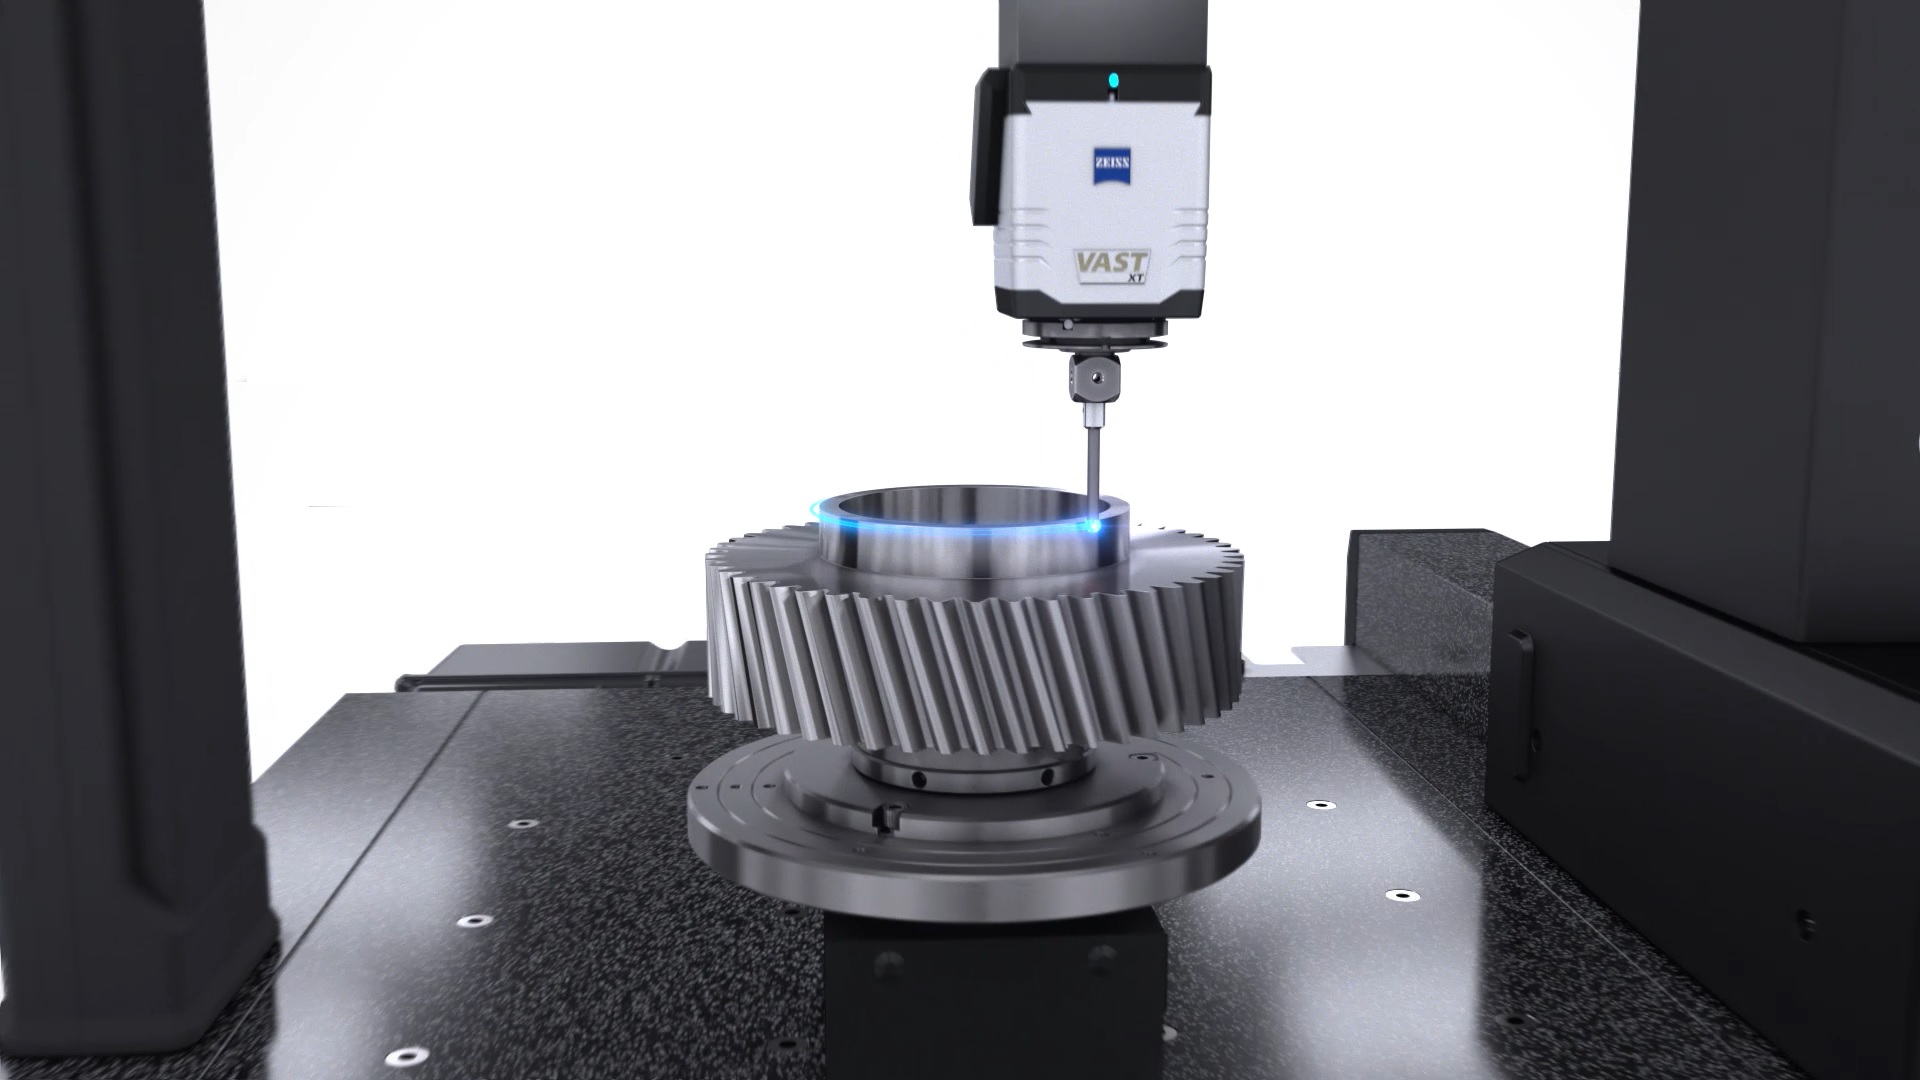 Bán mới - Sửa chửa - Hóan đổi đầu đo Zeiss Vast XT máy đo 3D - Coordinate measuring machine